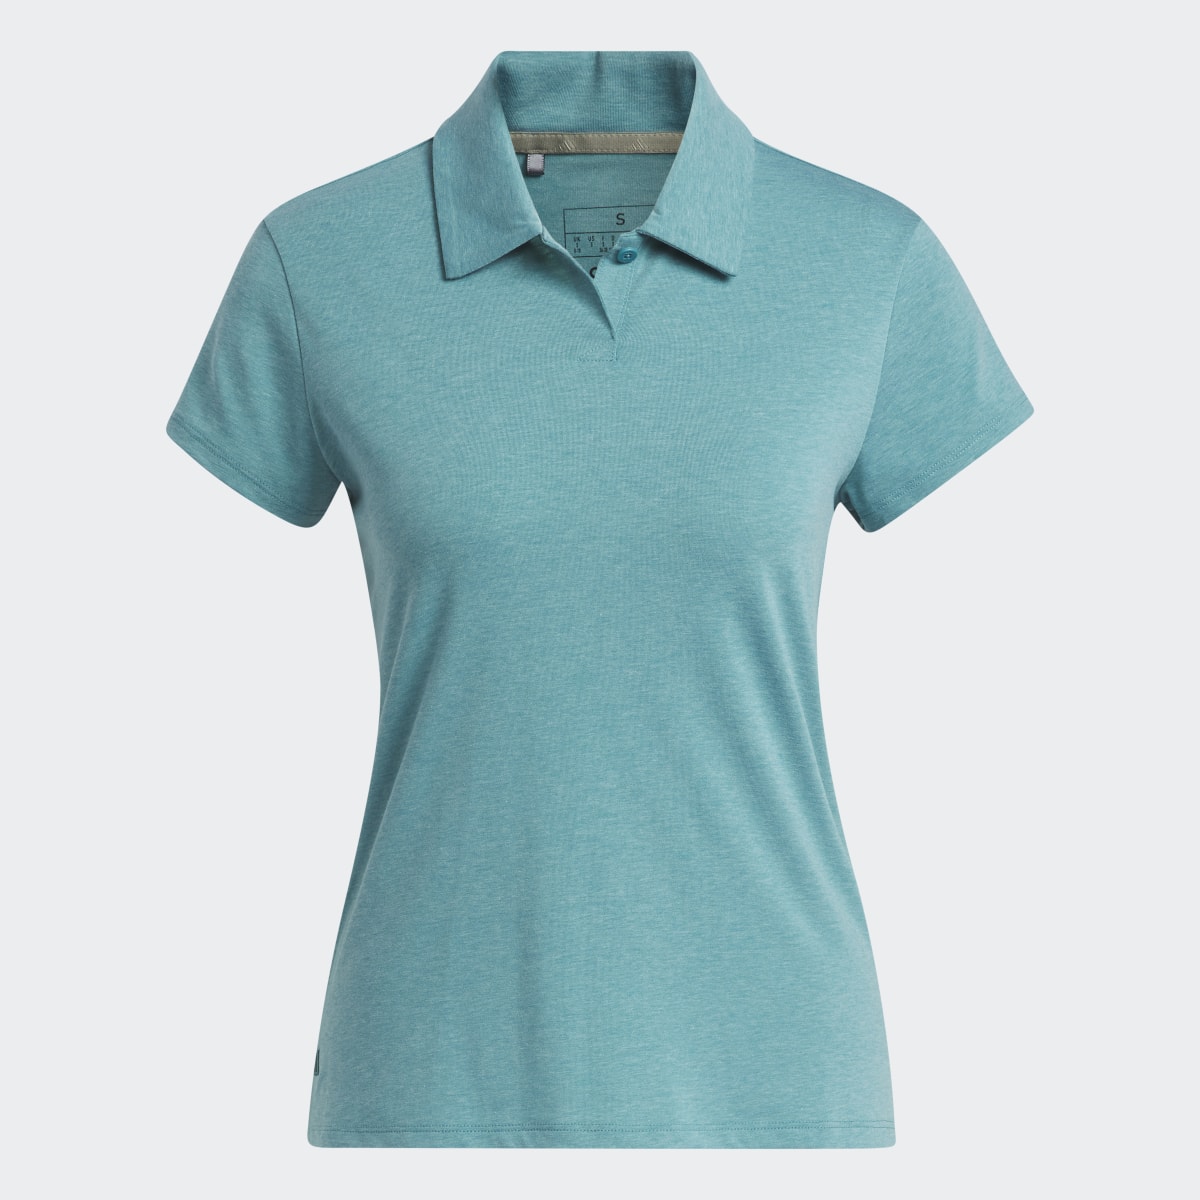 Adidas Koszulka Go-To Heathered Polo. 6